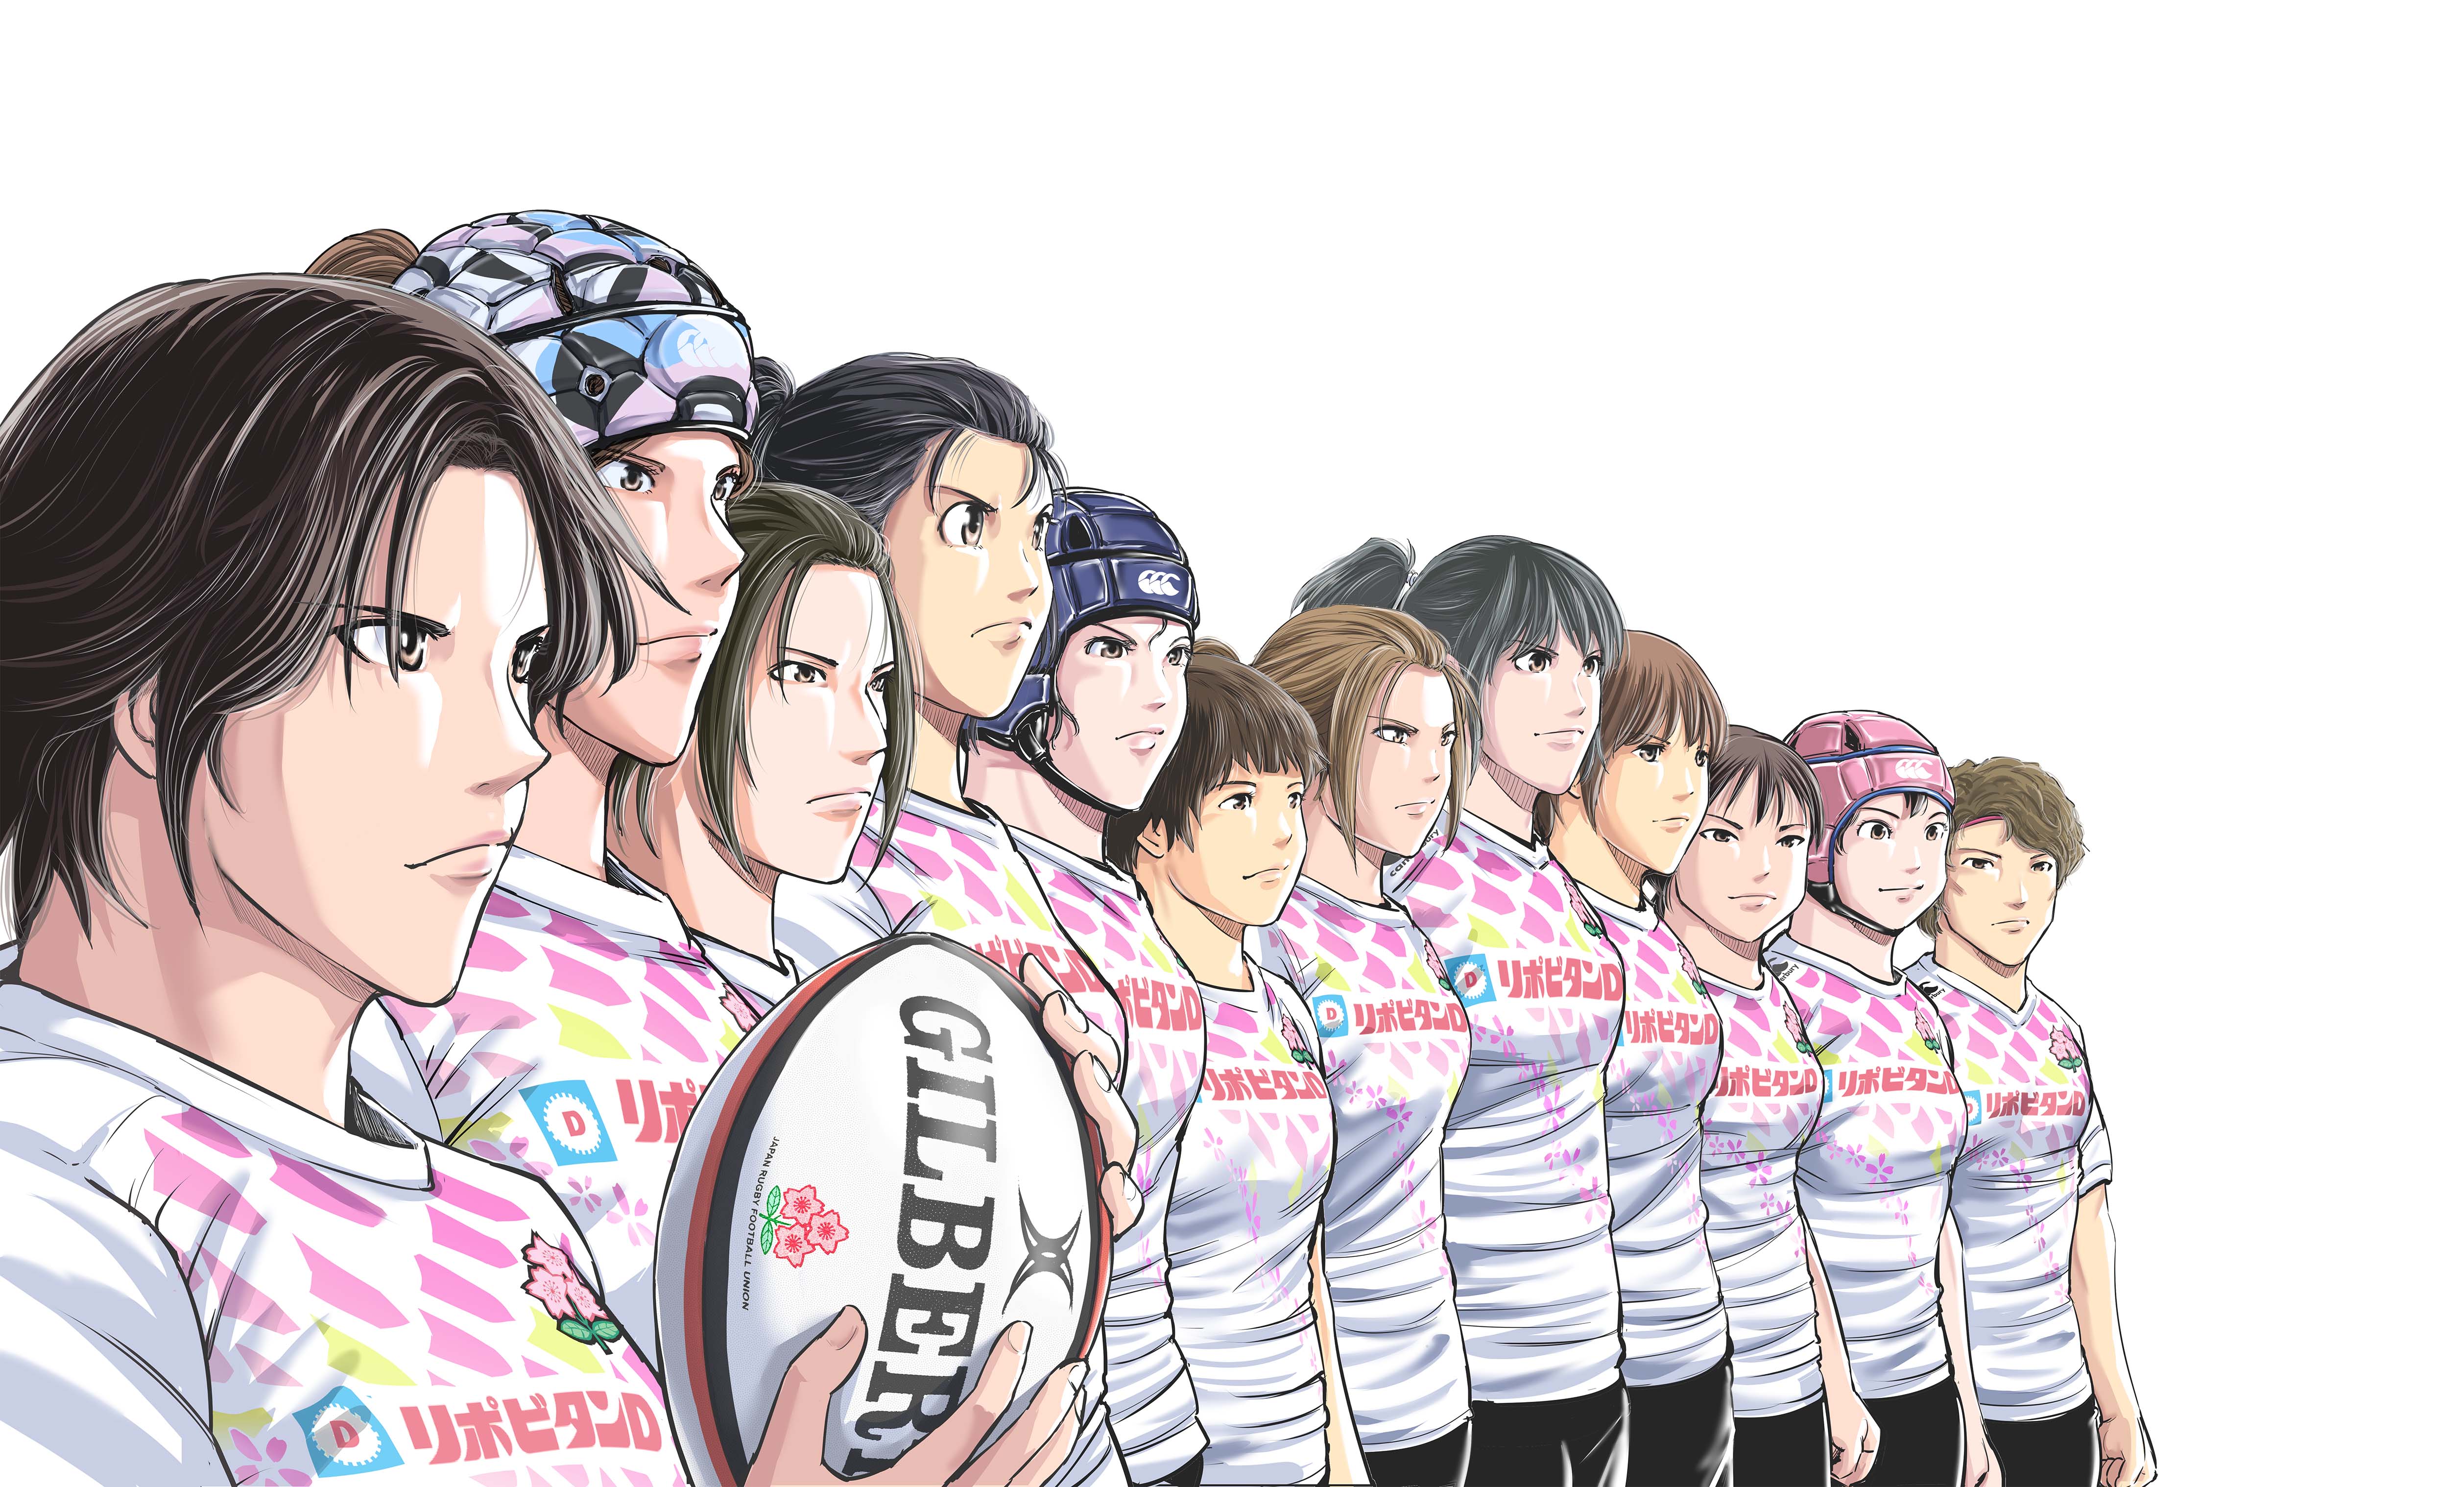 女子７人制ラグビー日本代表がマンガになった サクラセブンズ 女子７人制ラグビー日本代表 リオへの軌跡 株式会社双葉社のプレスリリース